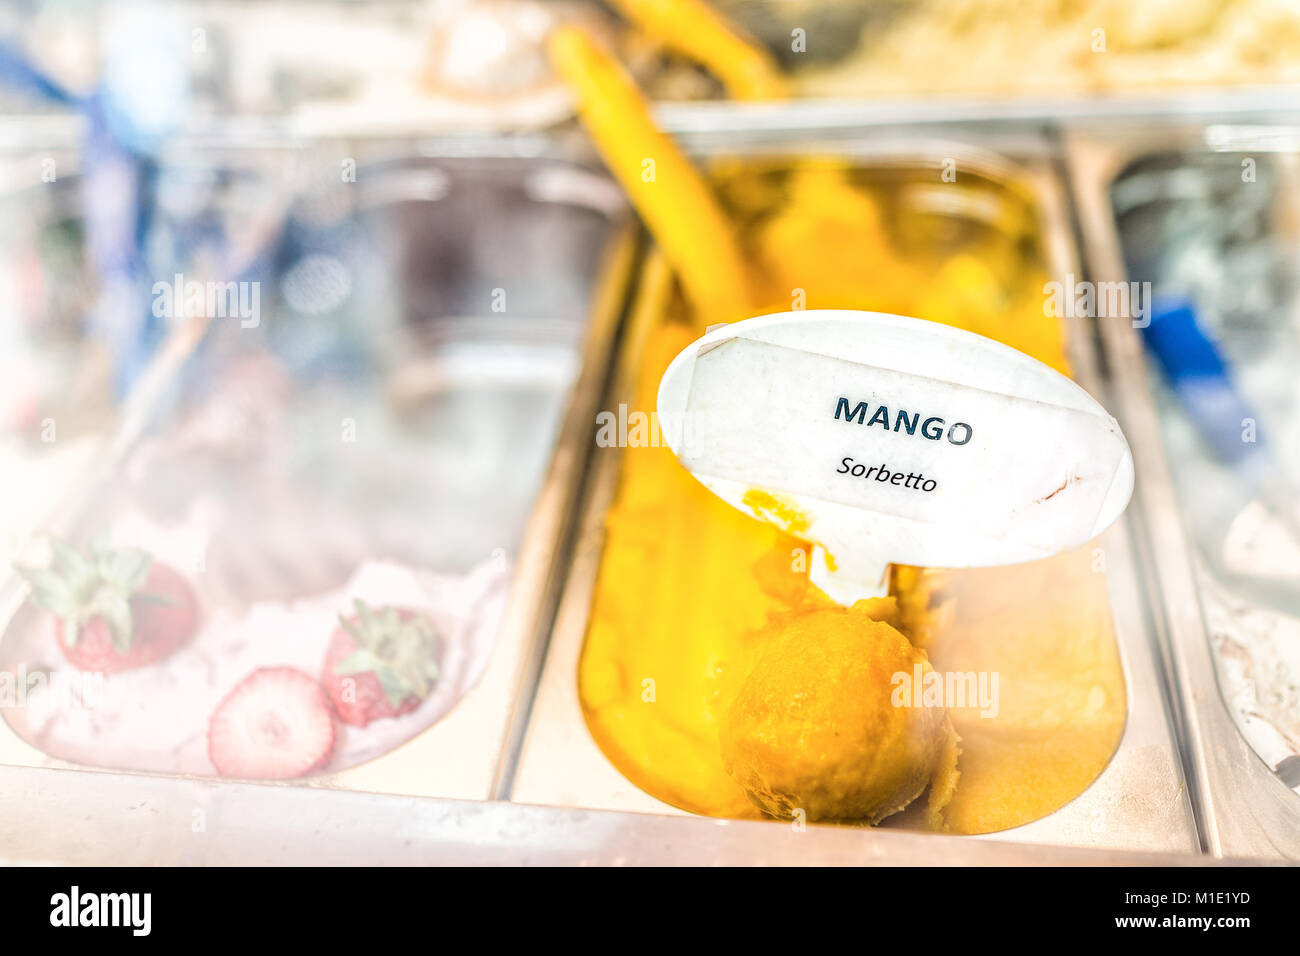 Gros plan macro de saveur mangue sorbet orange jaune crème glacée à signer sur l'affichage en magasin cafe shop avec écope en Italie, l'Italien sorbetto Banque D'Images